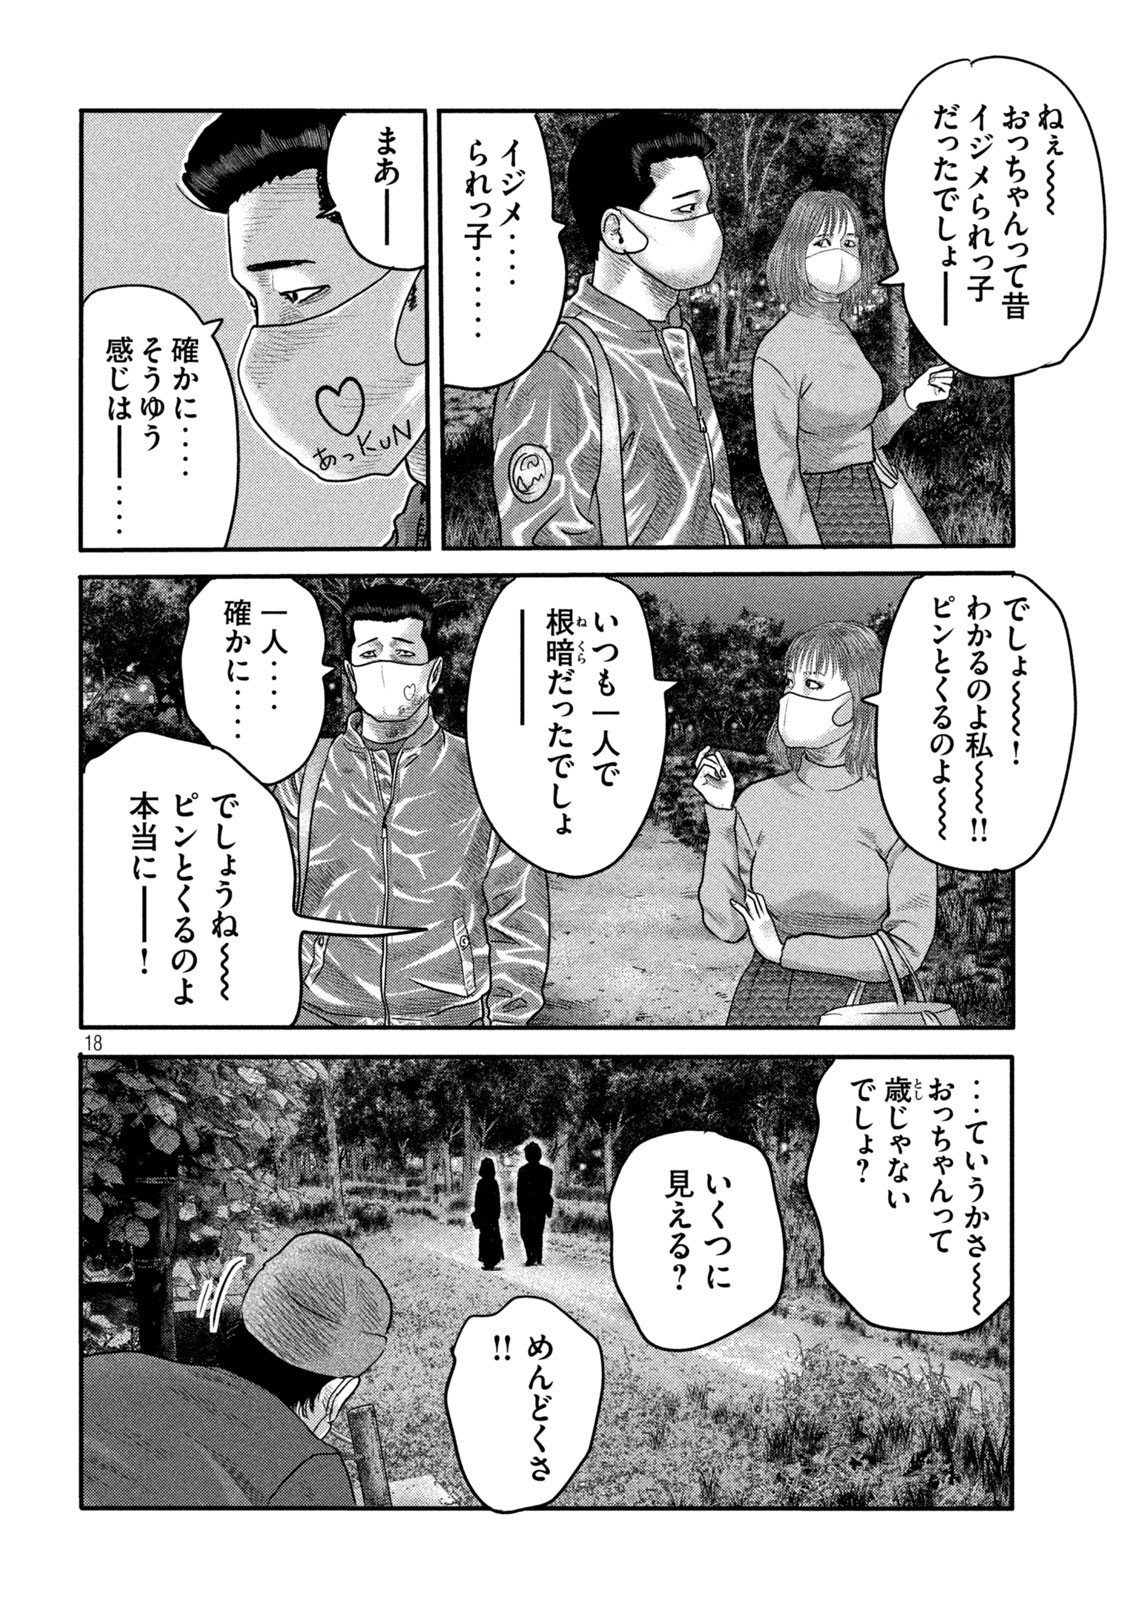 ザ・ファブル The Second Contact 第2話 - Page 18